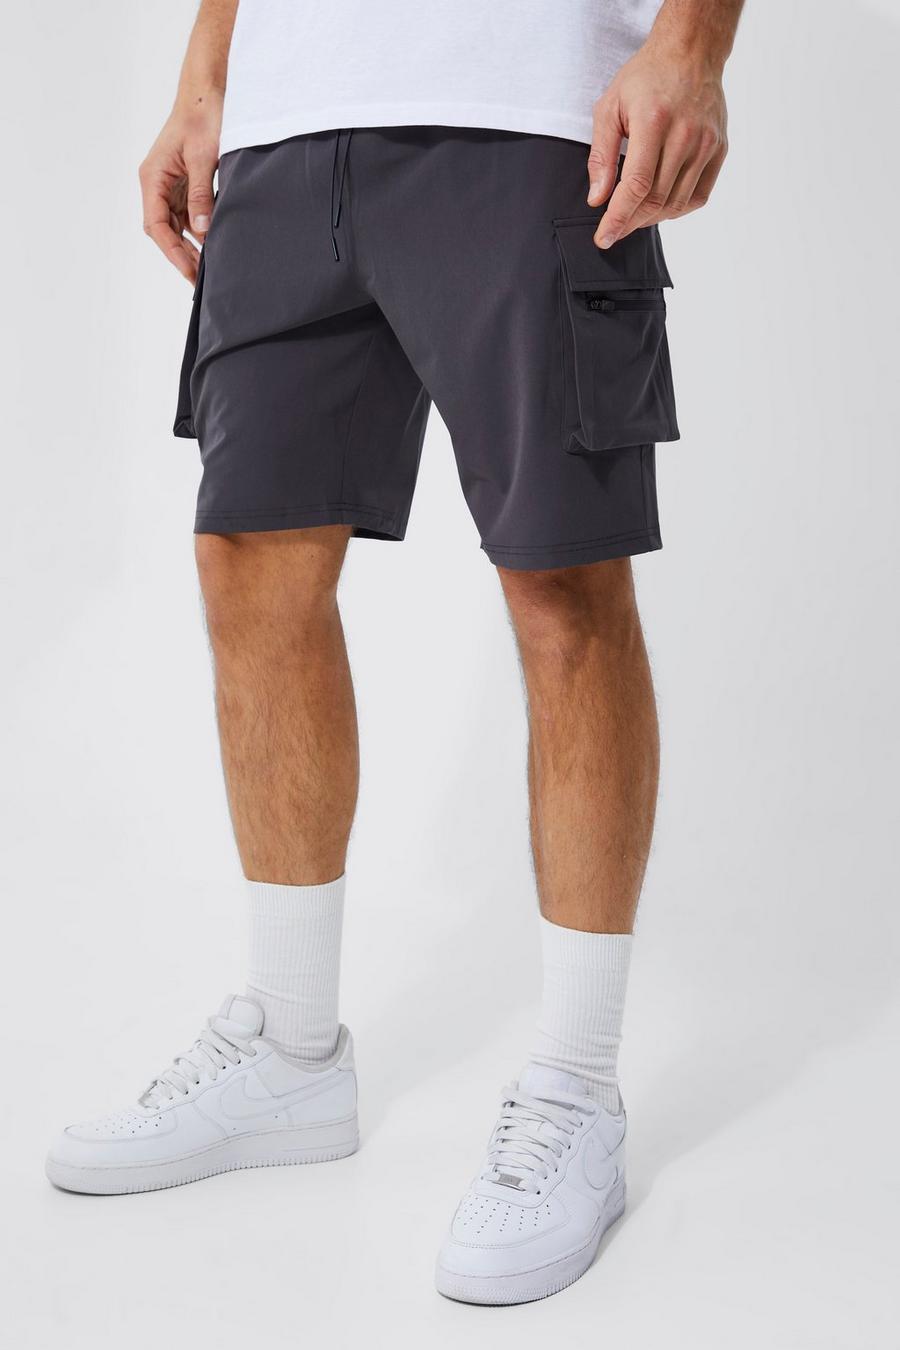 Pantalón corto Tall cargo elástico en 4 direcciones con cintura elástica, Dark grey